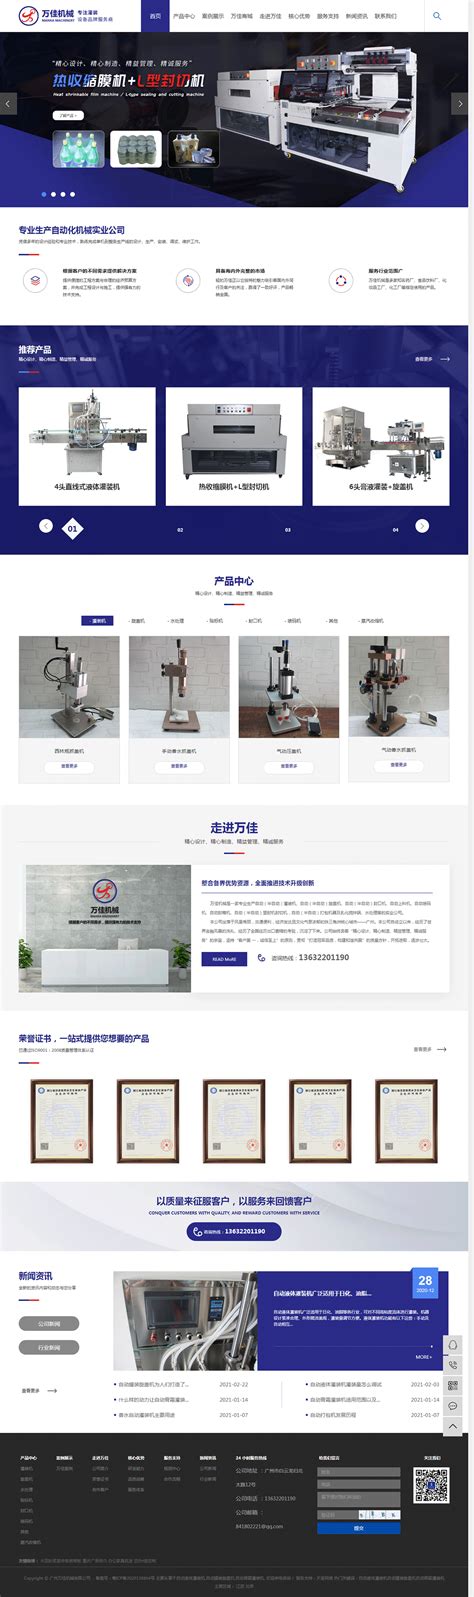 东莞市霖钢包装机械设备有限公司_营销型网站_天呈网络